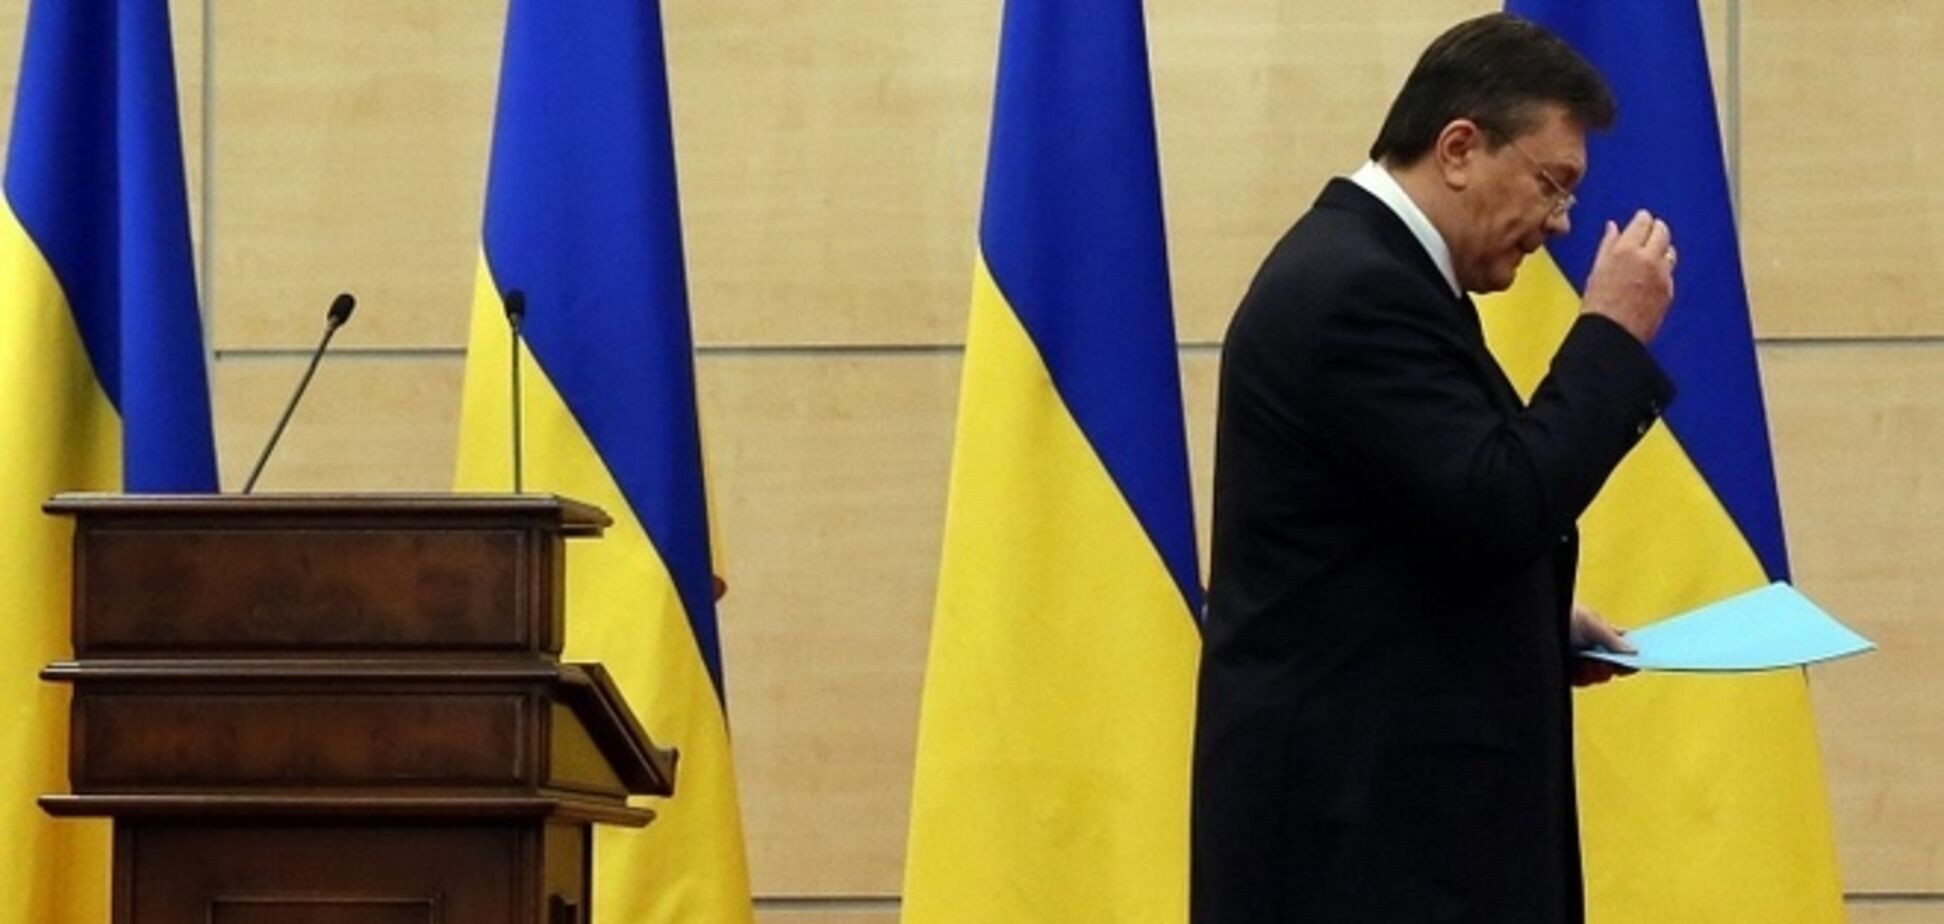 Россию еще год назад предупреждали о падении Януковича - журналист